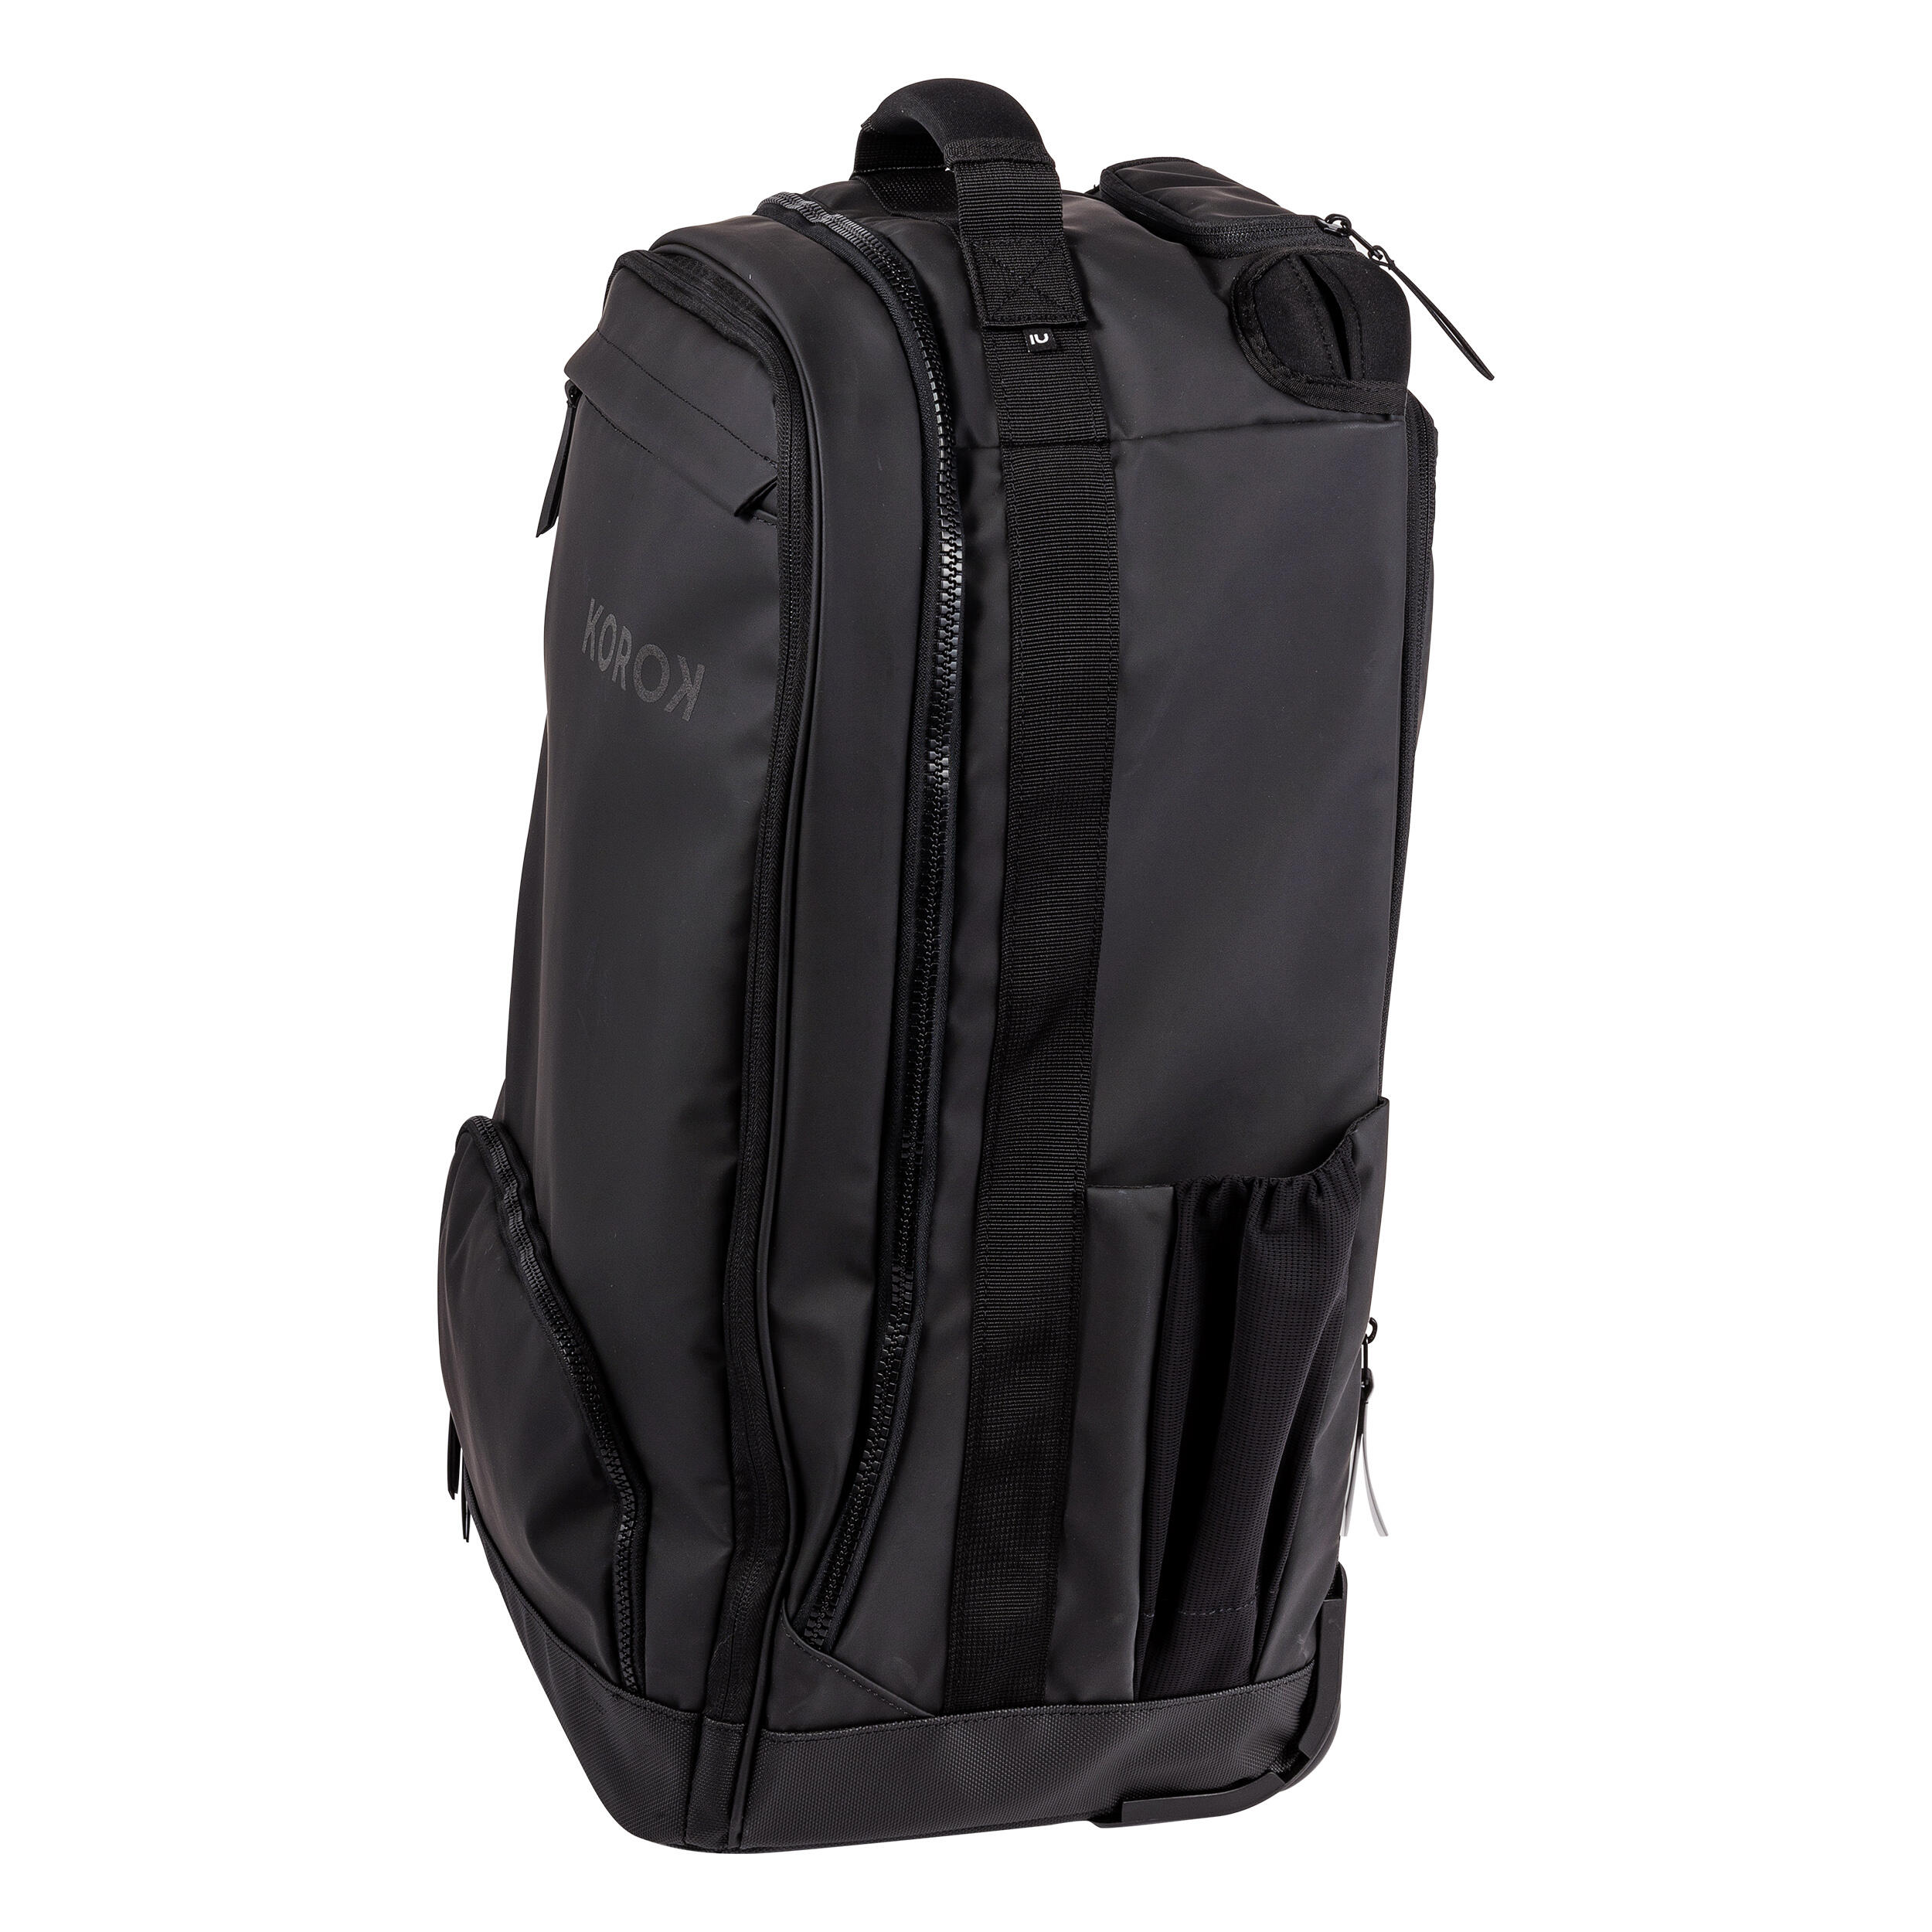 Trolley Bag FH900 - Black 6/18